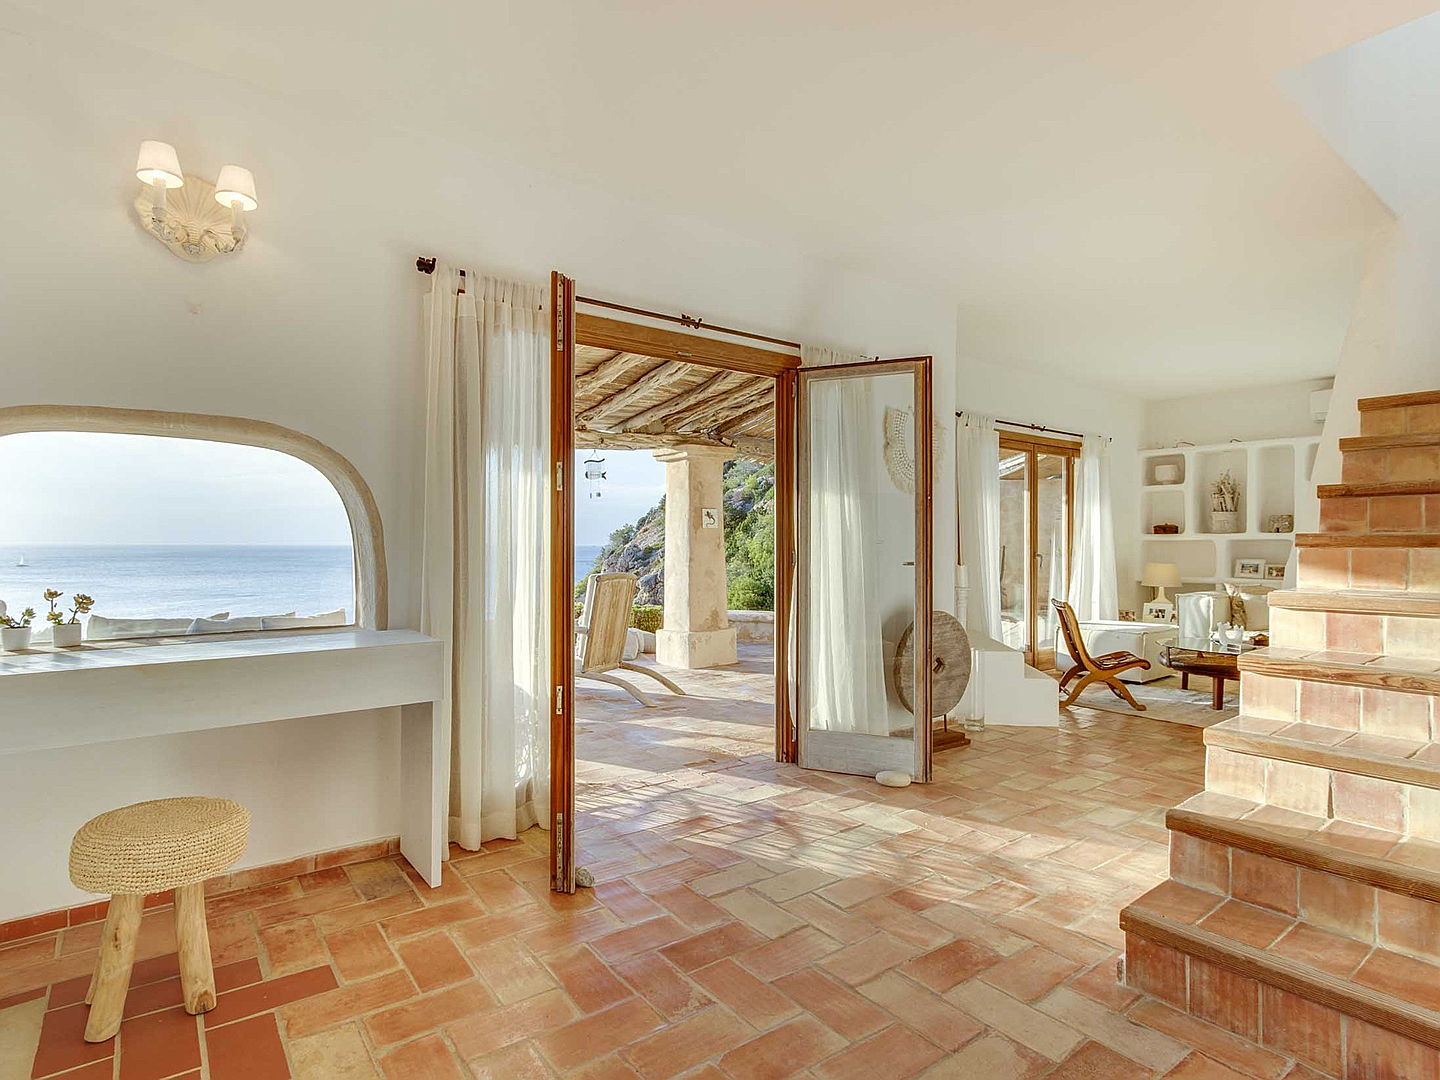  Ibiza
- Villa exclusiva en estilo de vida moderno con vistas al mar